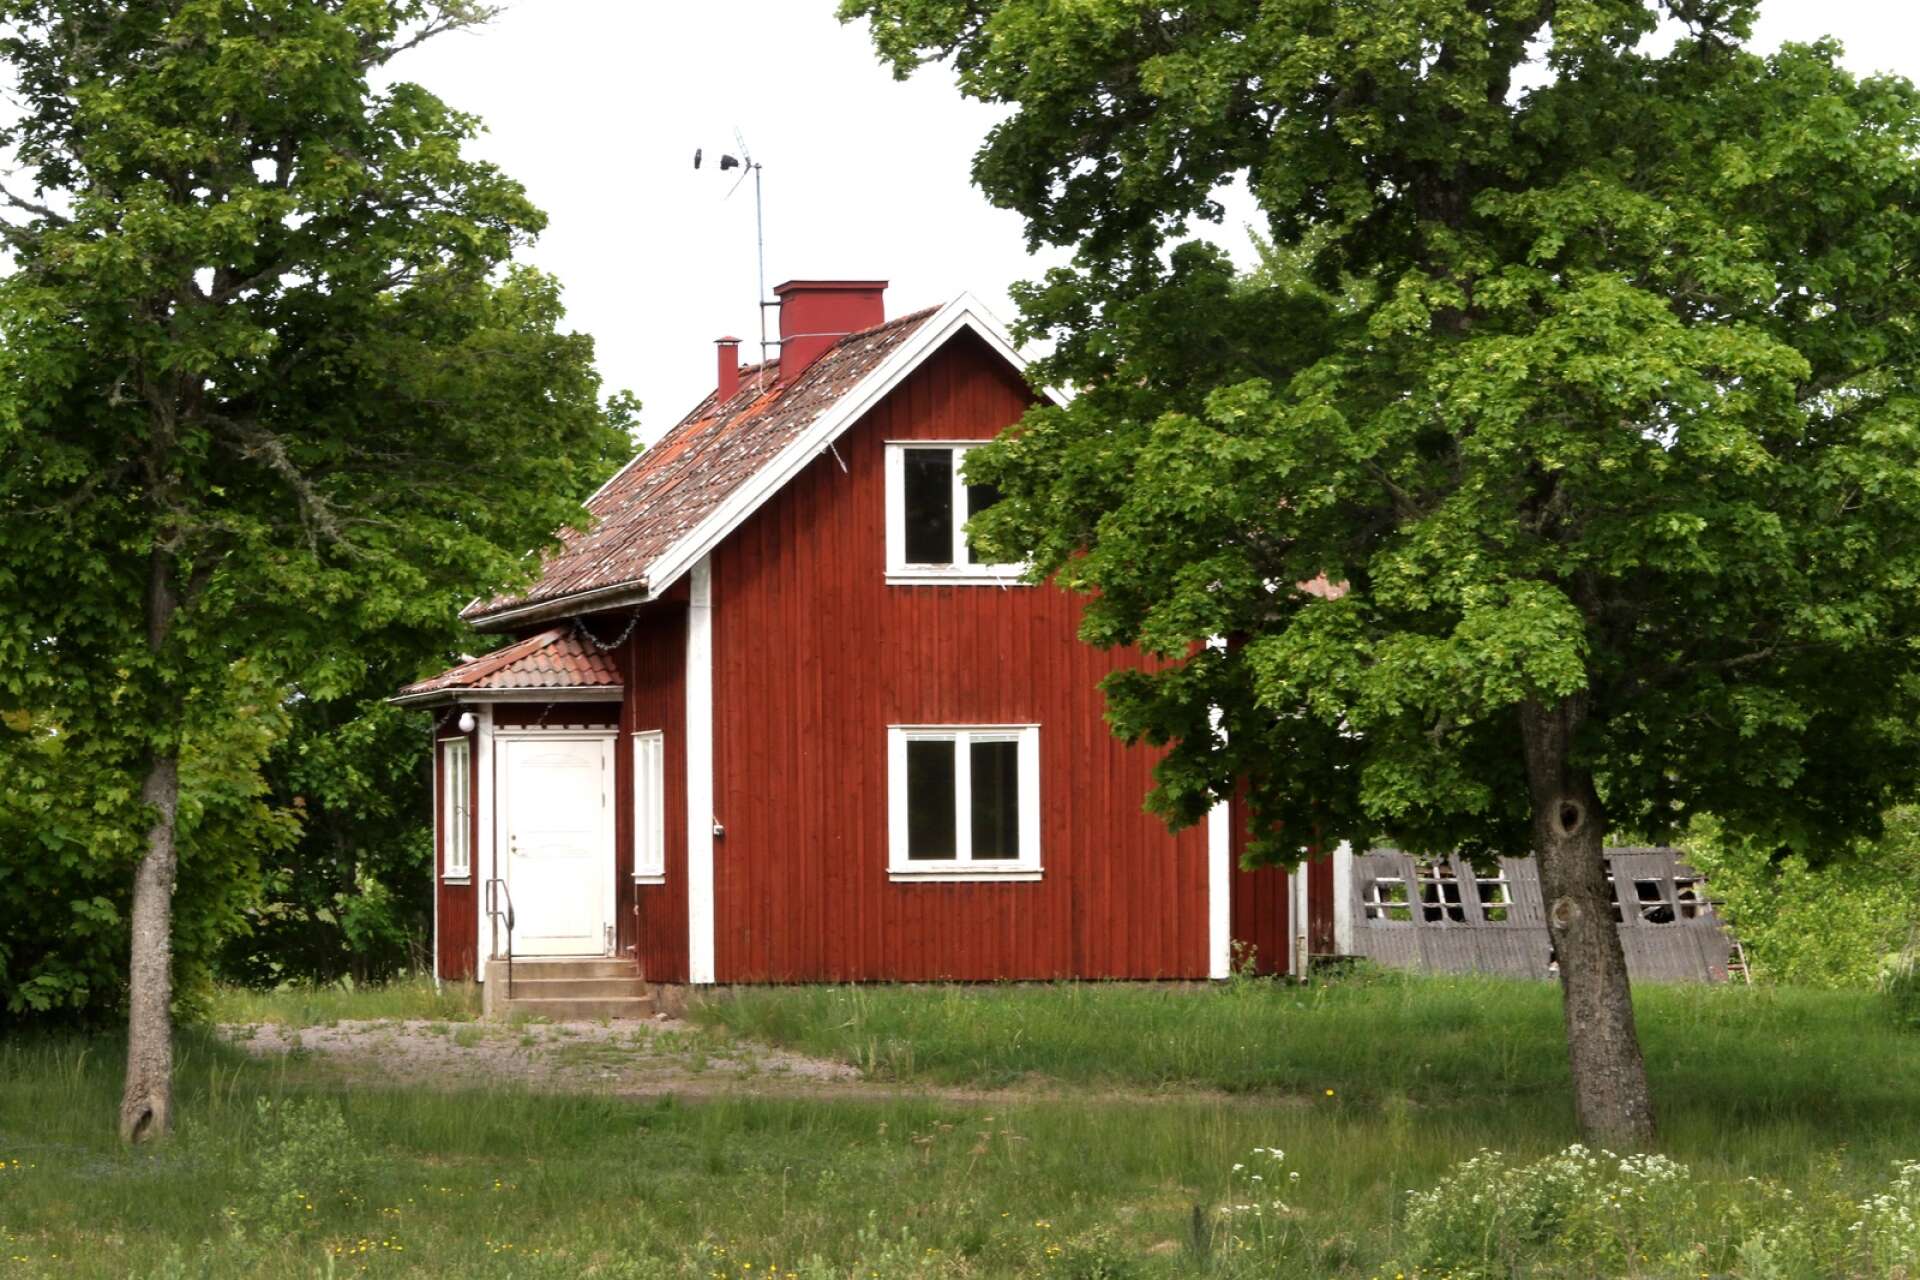 Svensk byggnadsvård hänvisar till den kulturmiljöutredning som gjordes i februari 2023 som en anledning till att Korstorps gård hamnar på deras gula lista. I utredningen slås det fast att gården har höga kulturhistoriska värden.